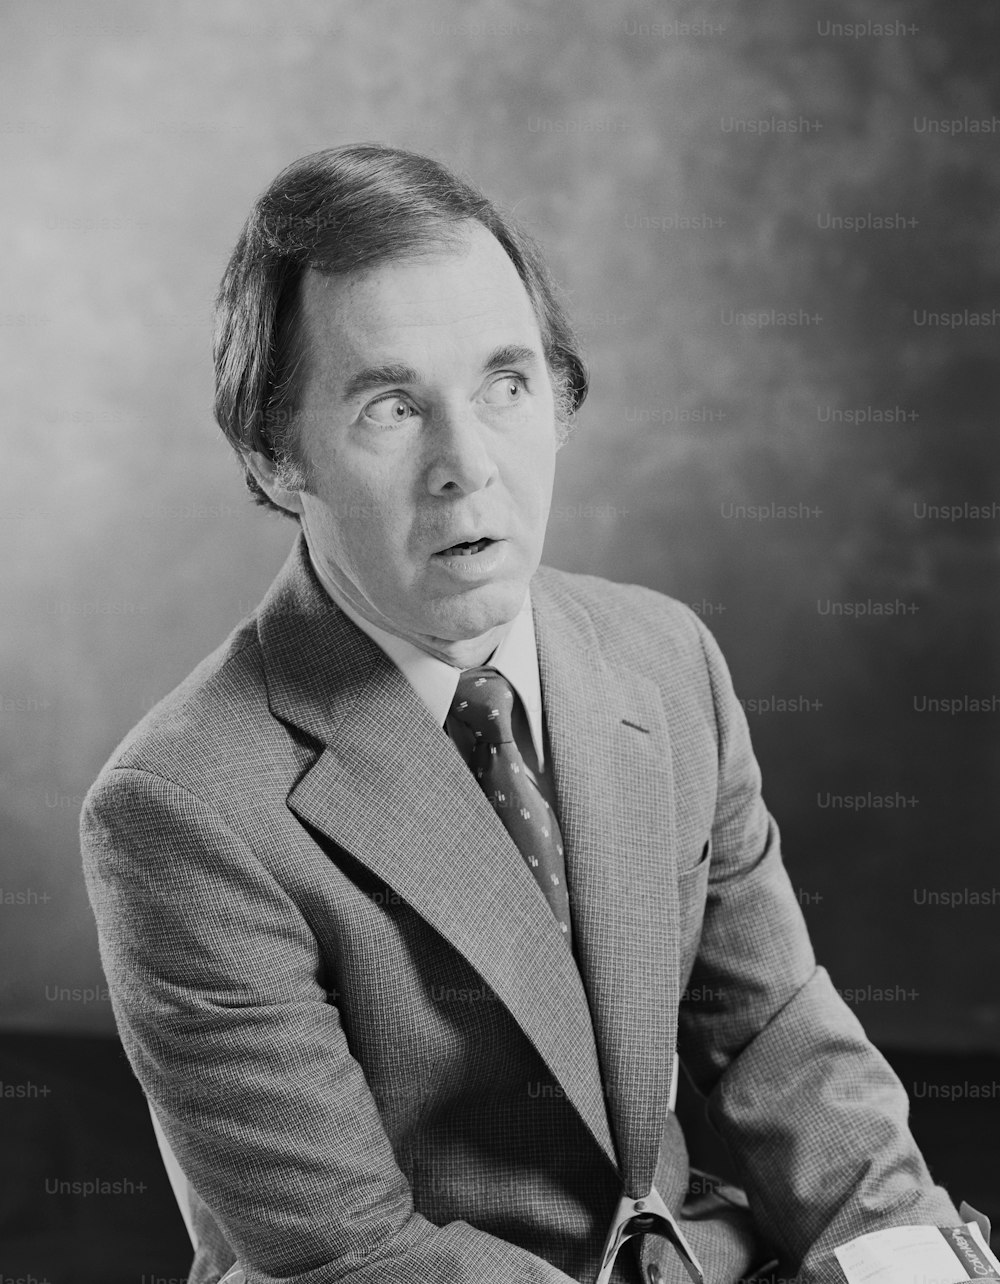 Una foto en blanco y negro de un hombre con traje